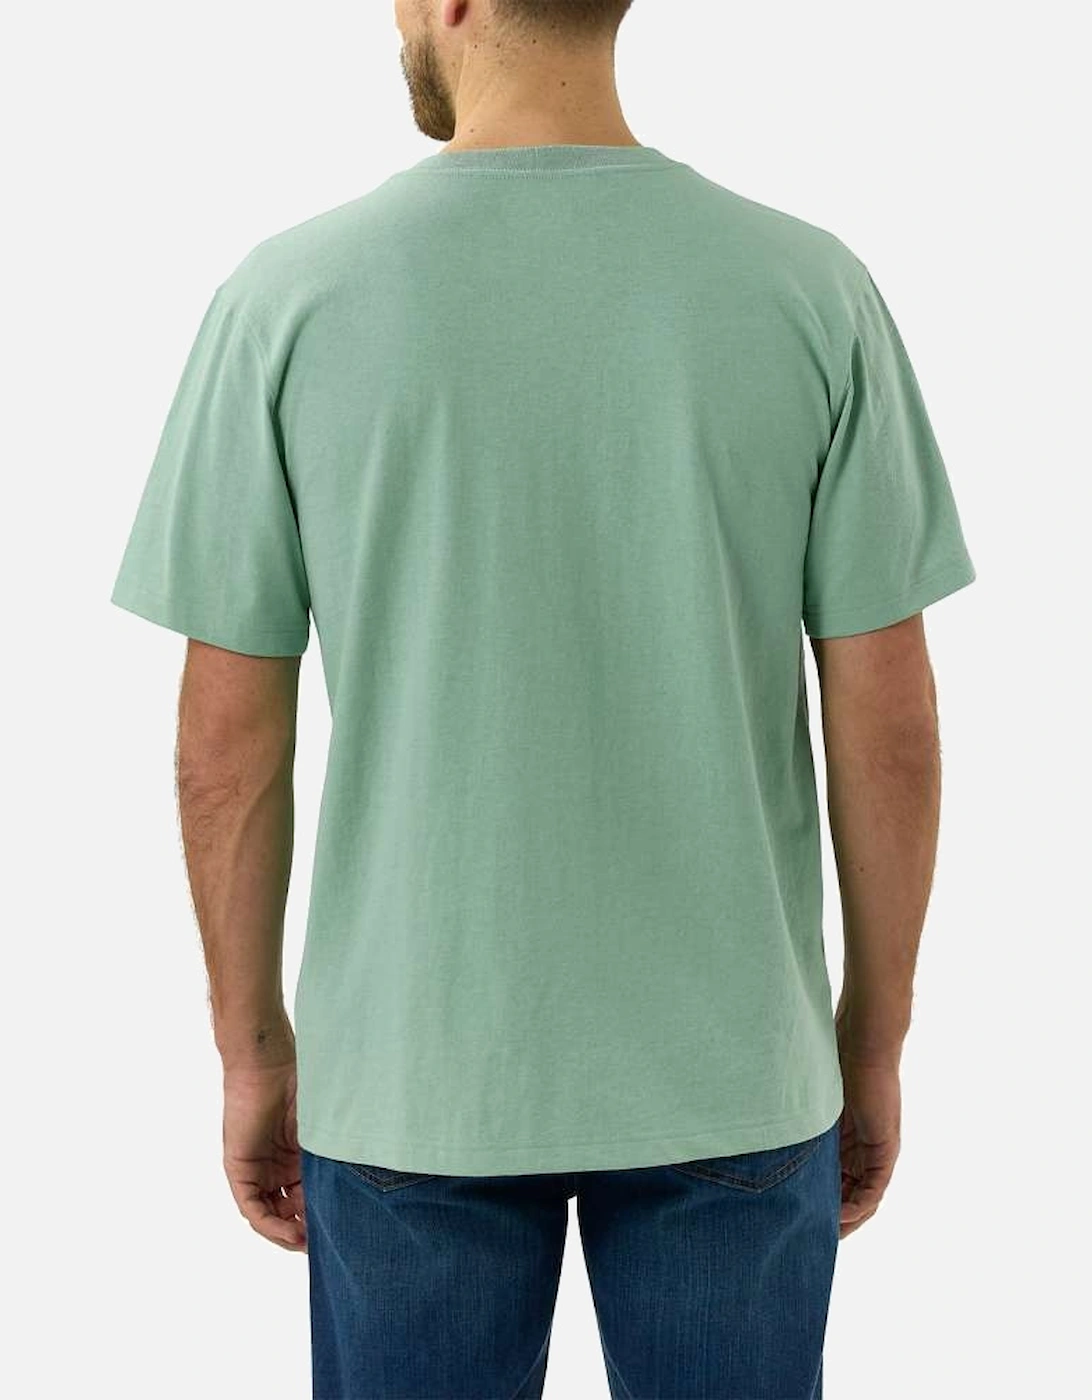 Carhartt Mens Work Pocket Short Sleeve Cotton T Shirt Tee